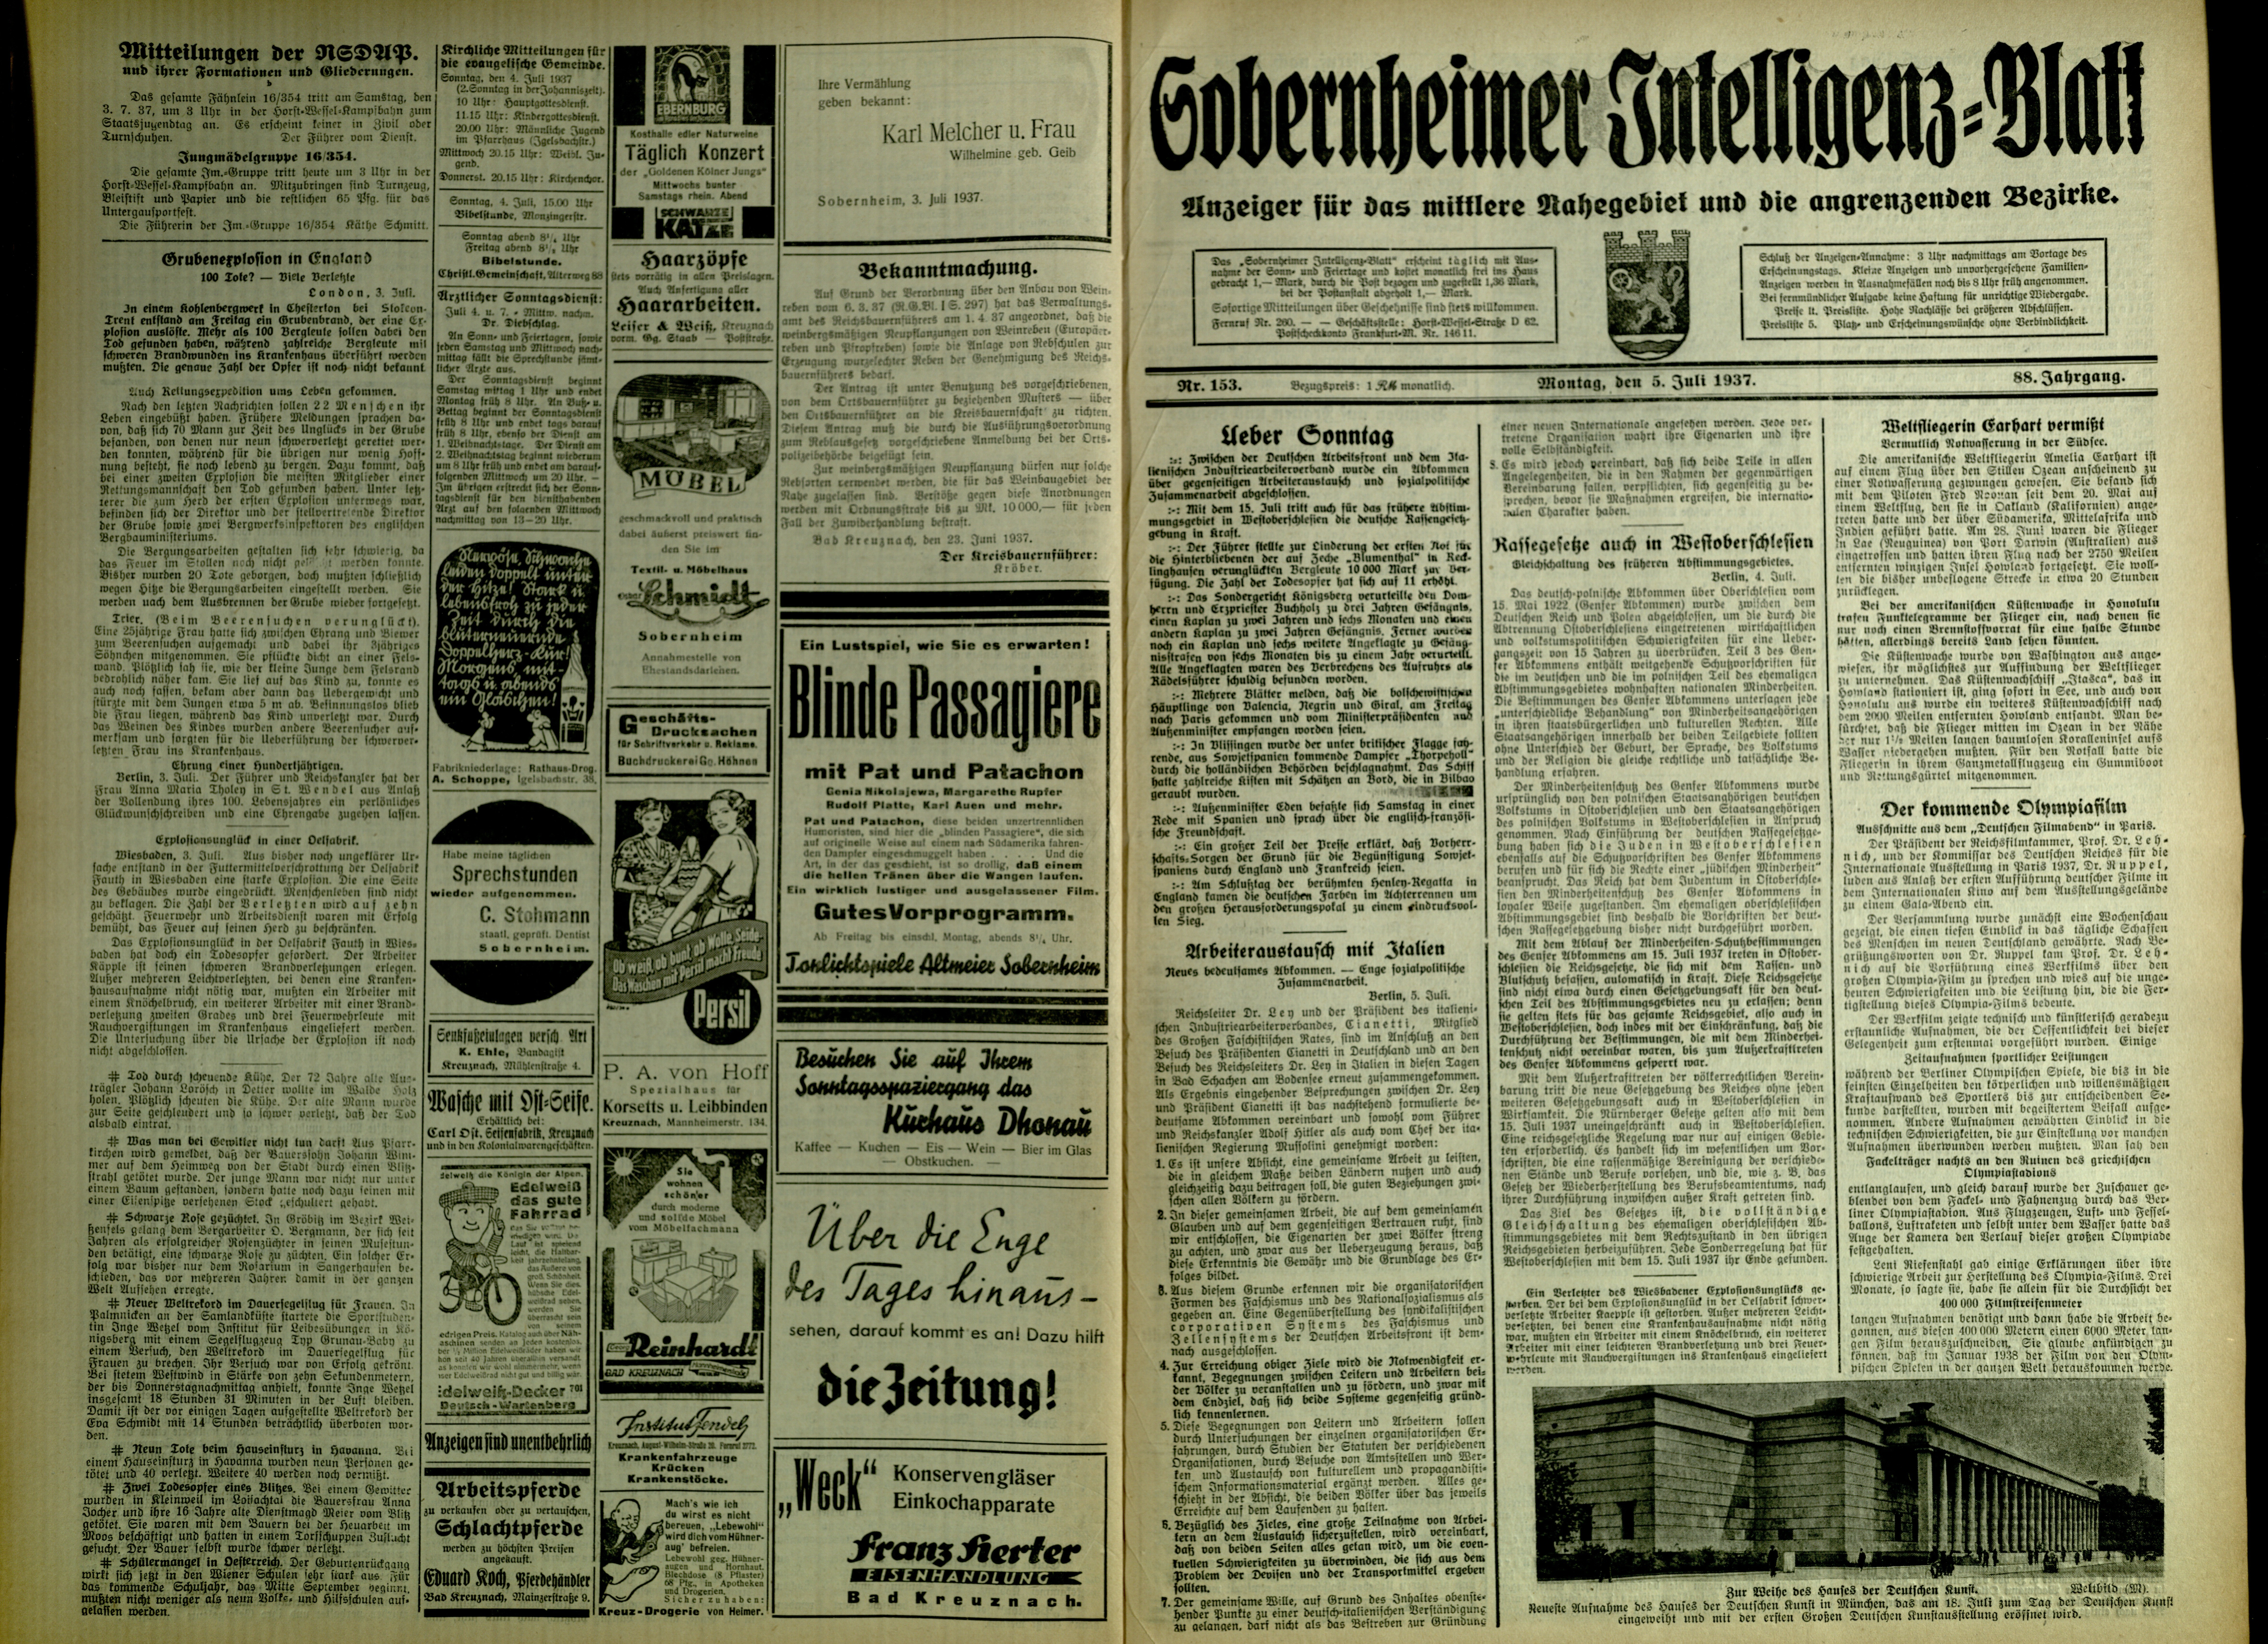 Zeitung: Sobernheimer Intelligenzblatt; Juni 1937, Jg. 88 Nr. 133 (Heimatmuseum Bad Sobernheim CC BY-NC-SA)